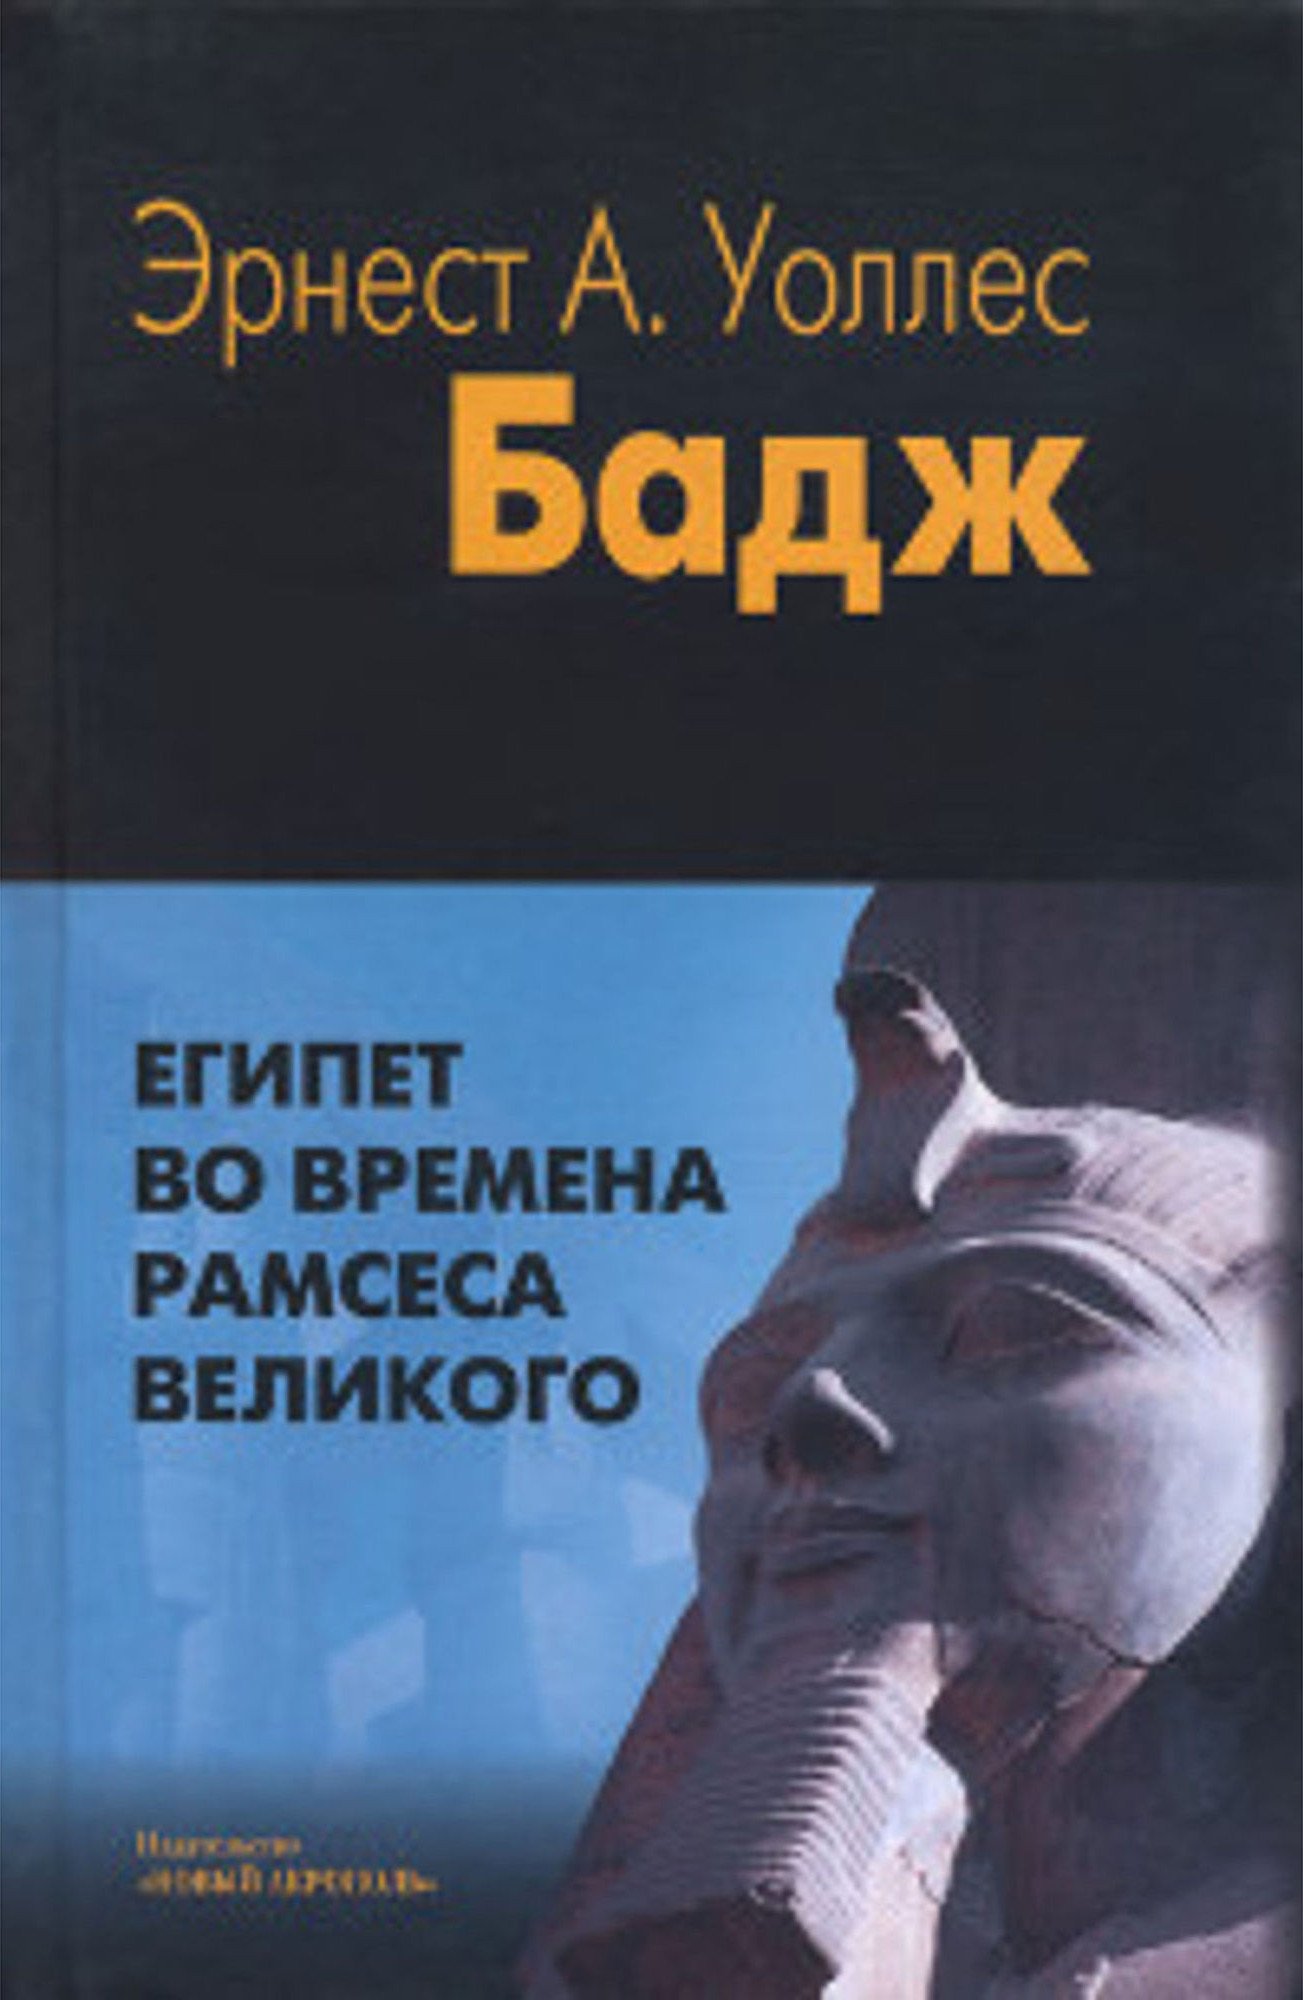 Купить книгу Египет во времена Рамсеса Великого Бадж Эрнест А. Уоллес в интернет-магазине Ариаварта